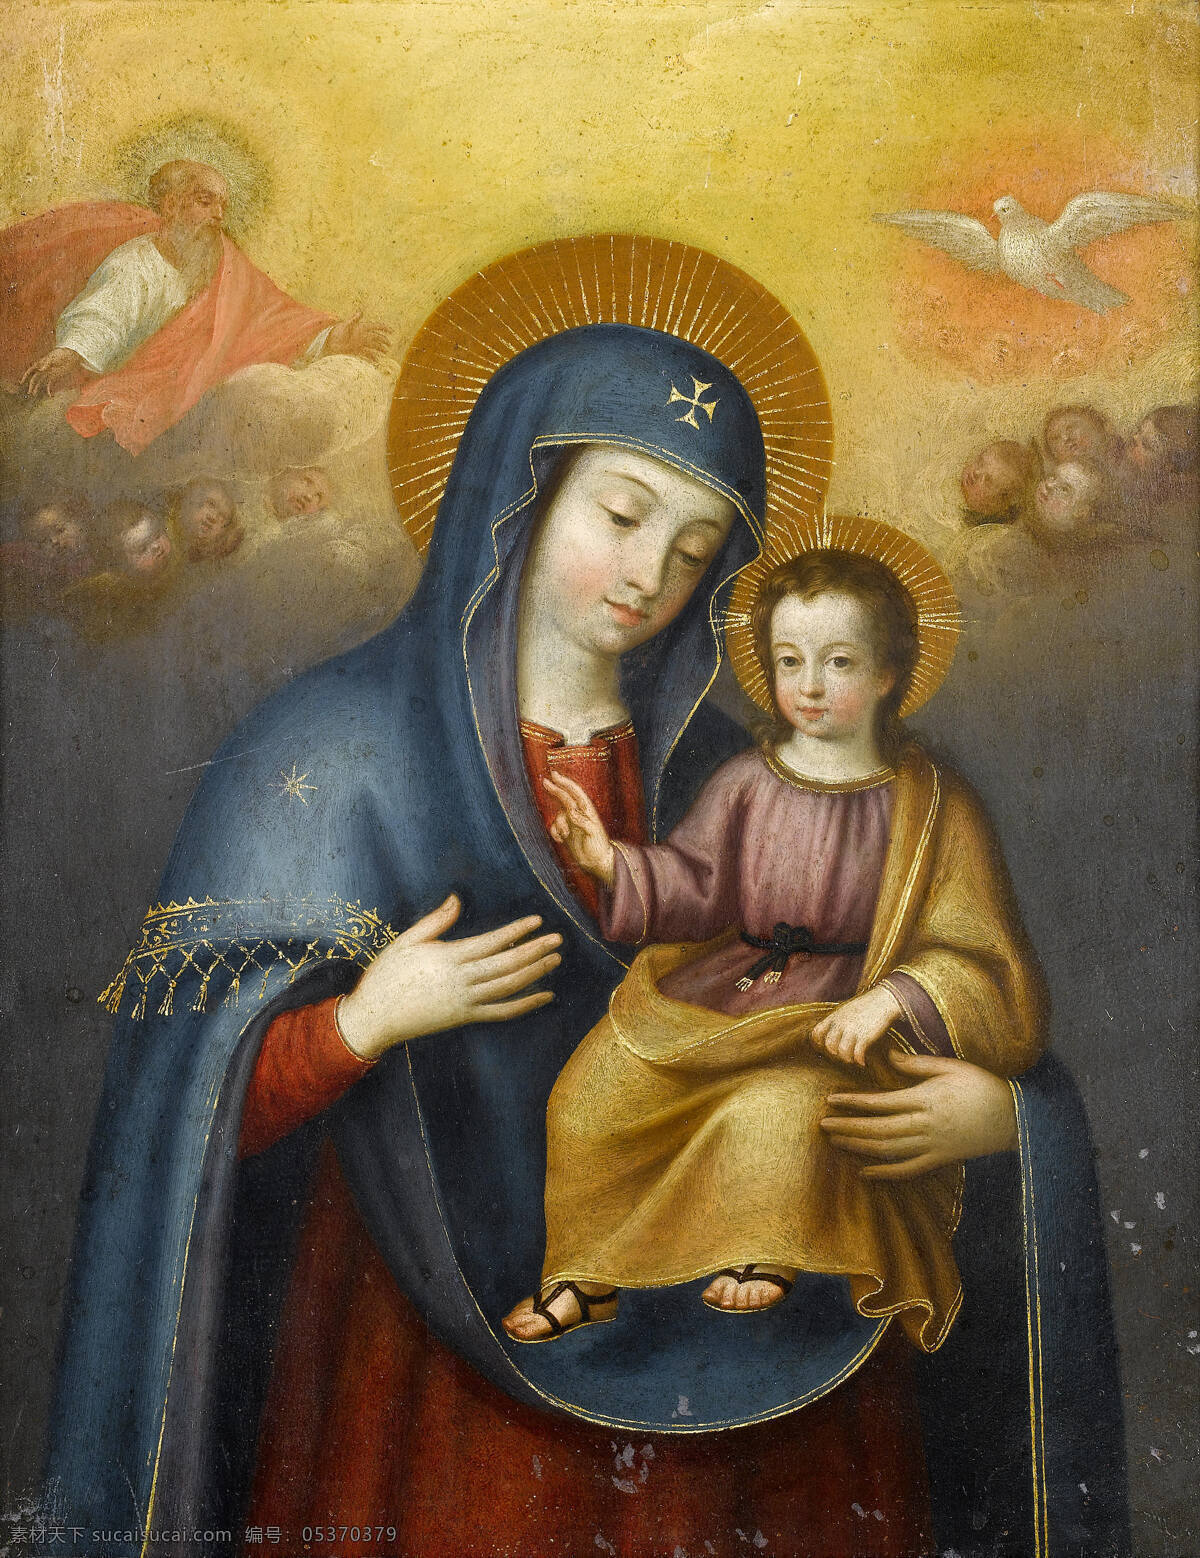 圣母与圣婴 圣母玛丽娅 圣婴耶稣 天使 神鸟 上帝 宗教油画 古典油画 油画 绘画书法 文化艺术